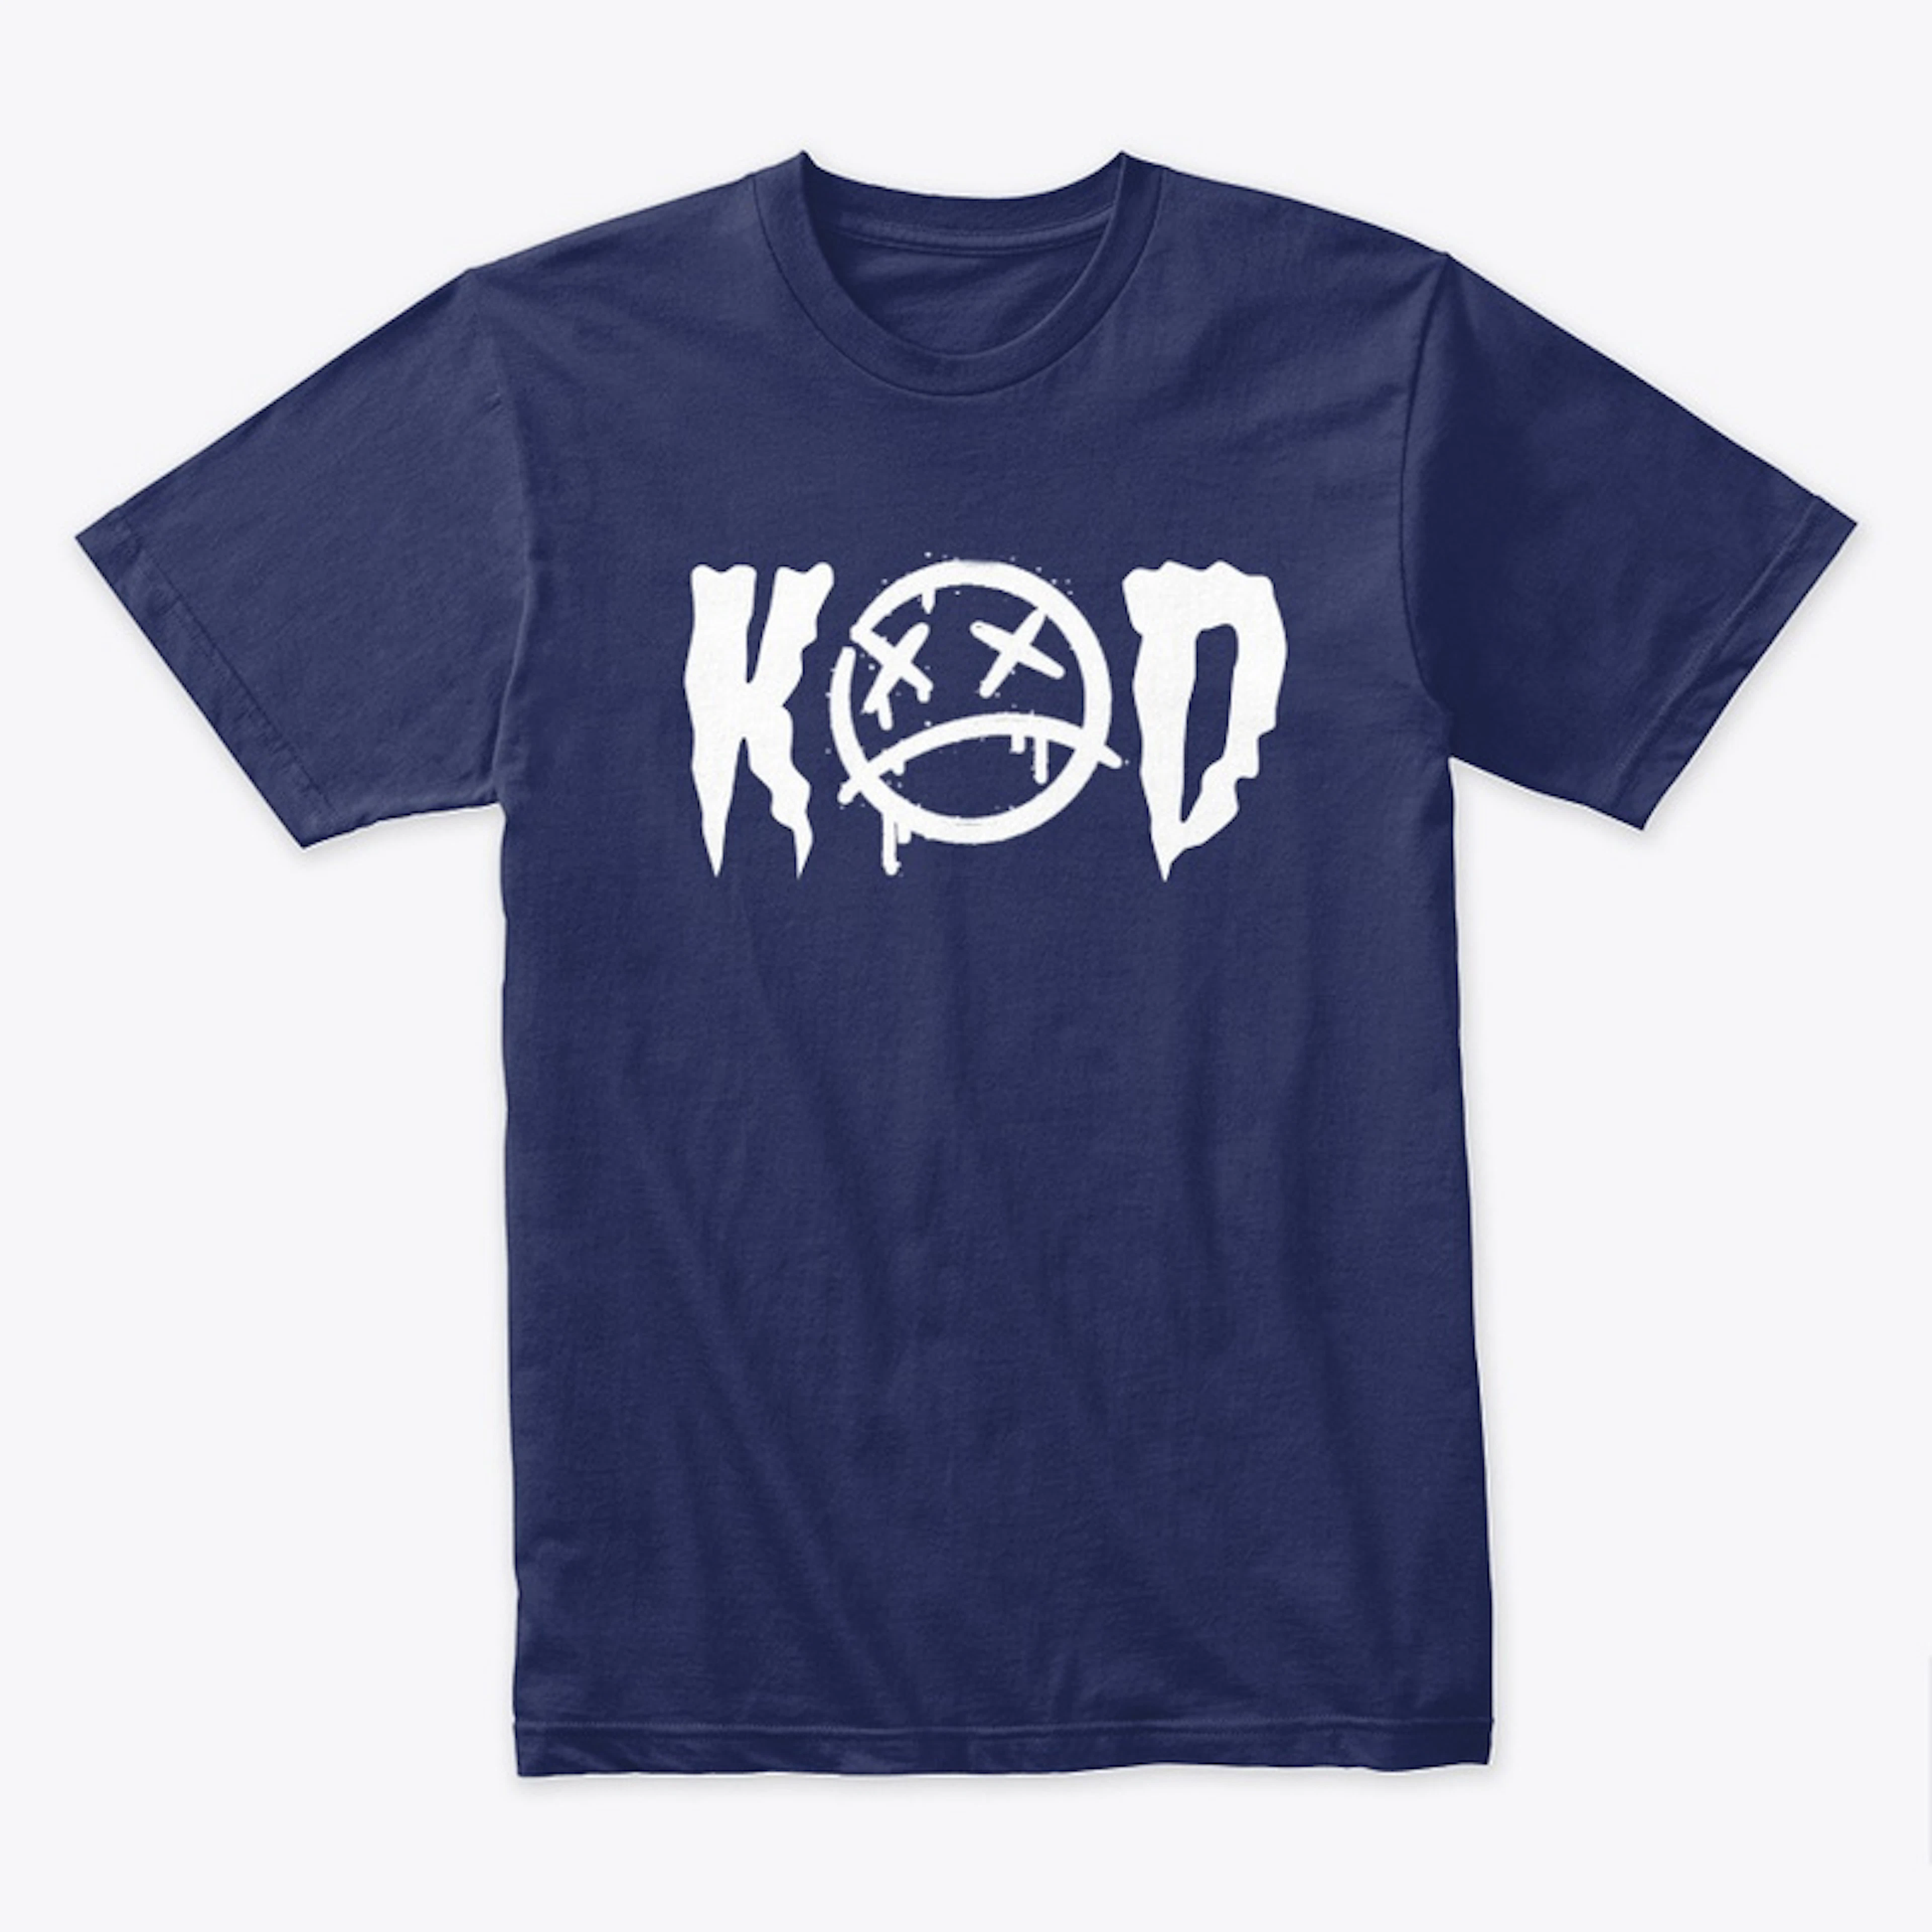 "KOD" Design.